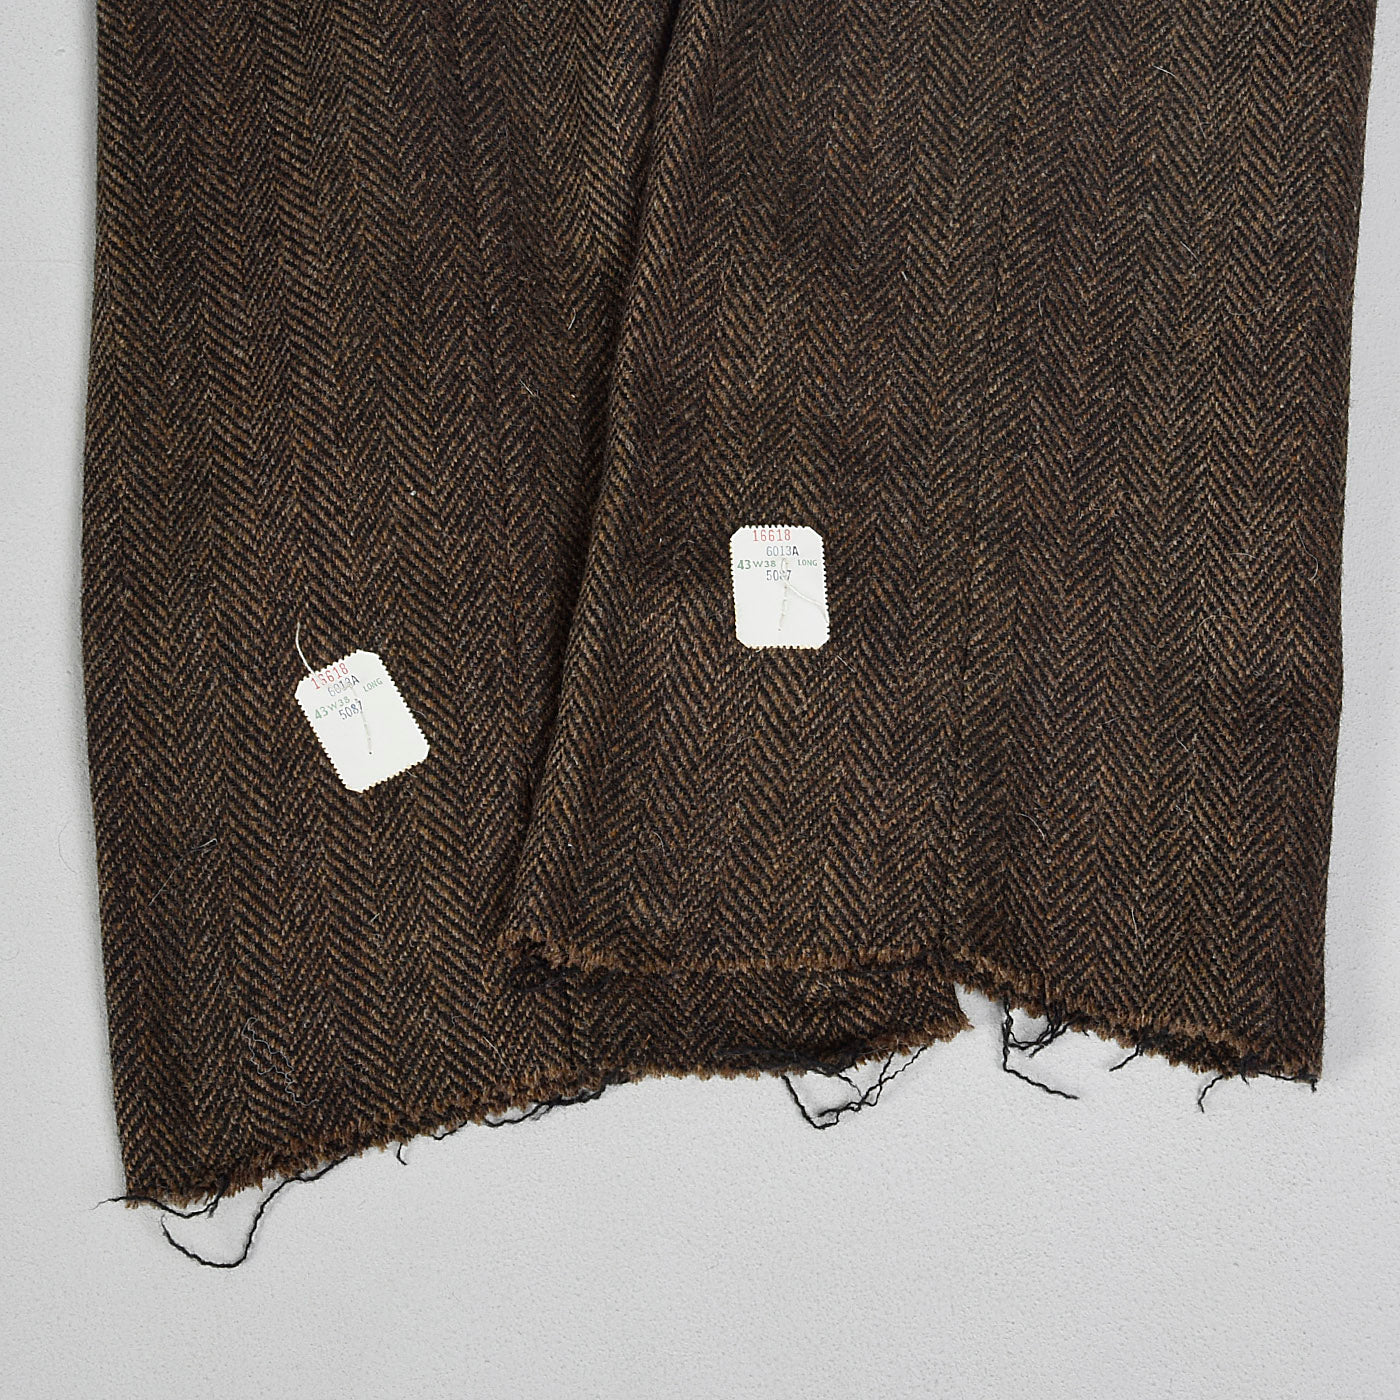 1970s Mens Deadstock Wool Pants in Brown and Black Herringbone